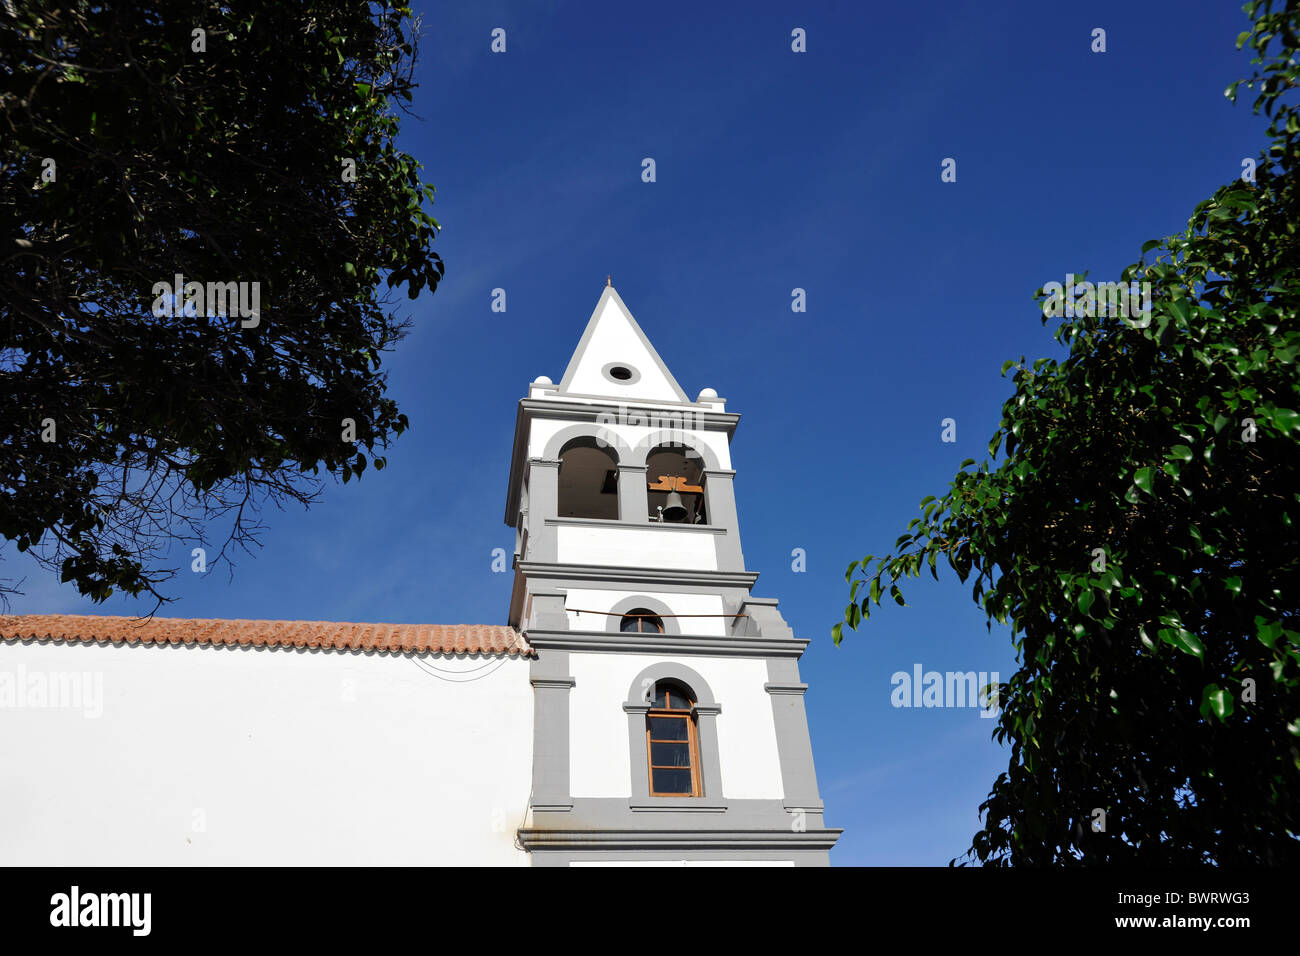 Parish church of Nuestra Senora del Rosario, Puerto del Rosario, Fuerteventura, Canary Islands, Spain, Europe Stock Photo